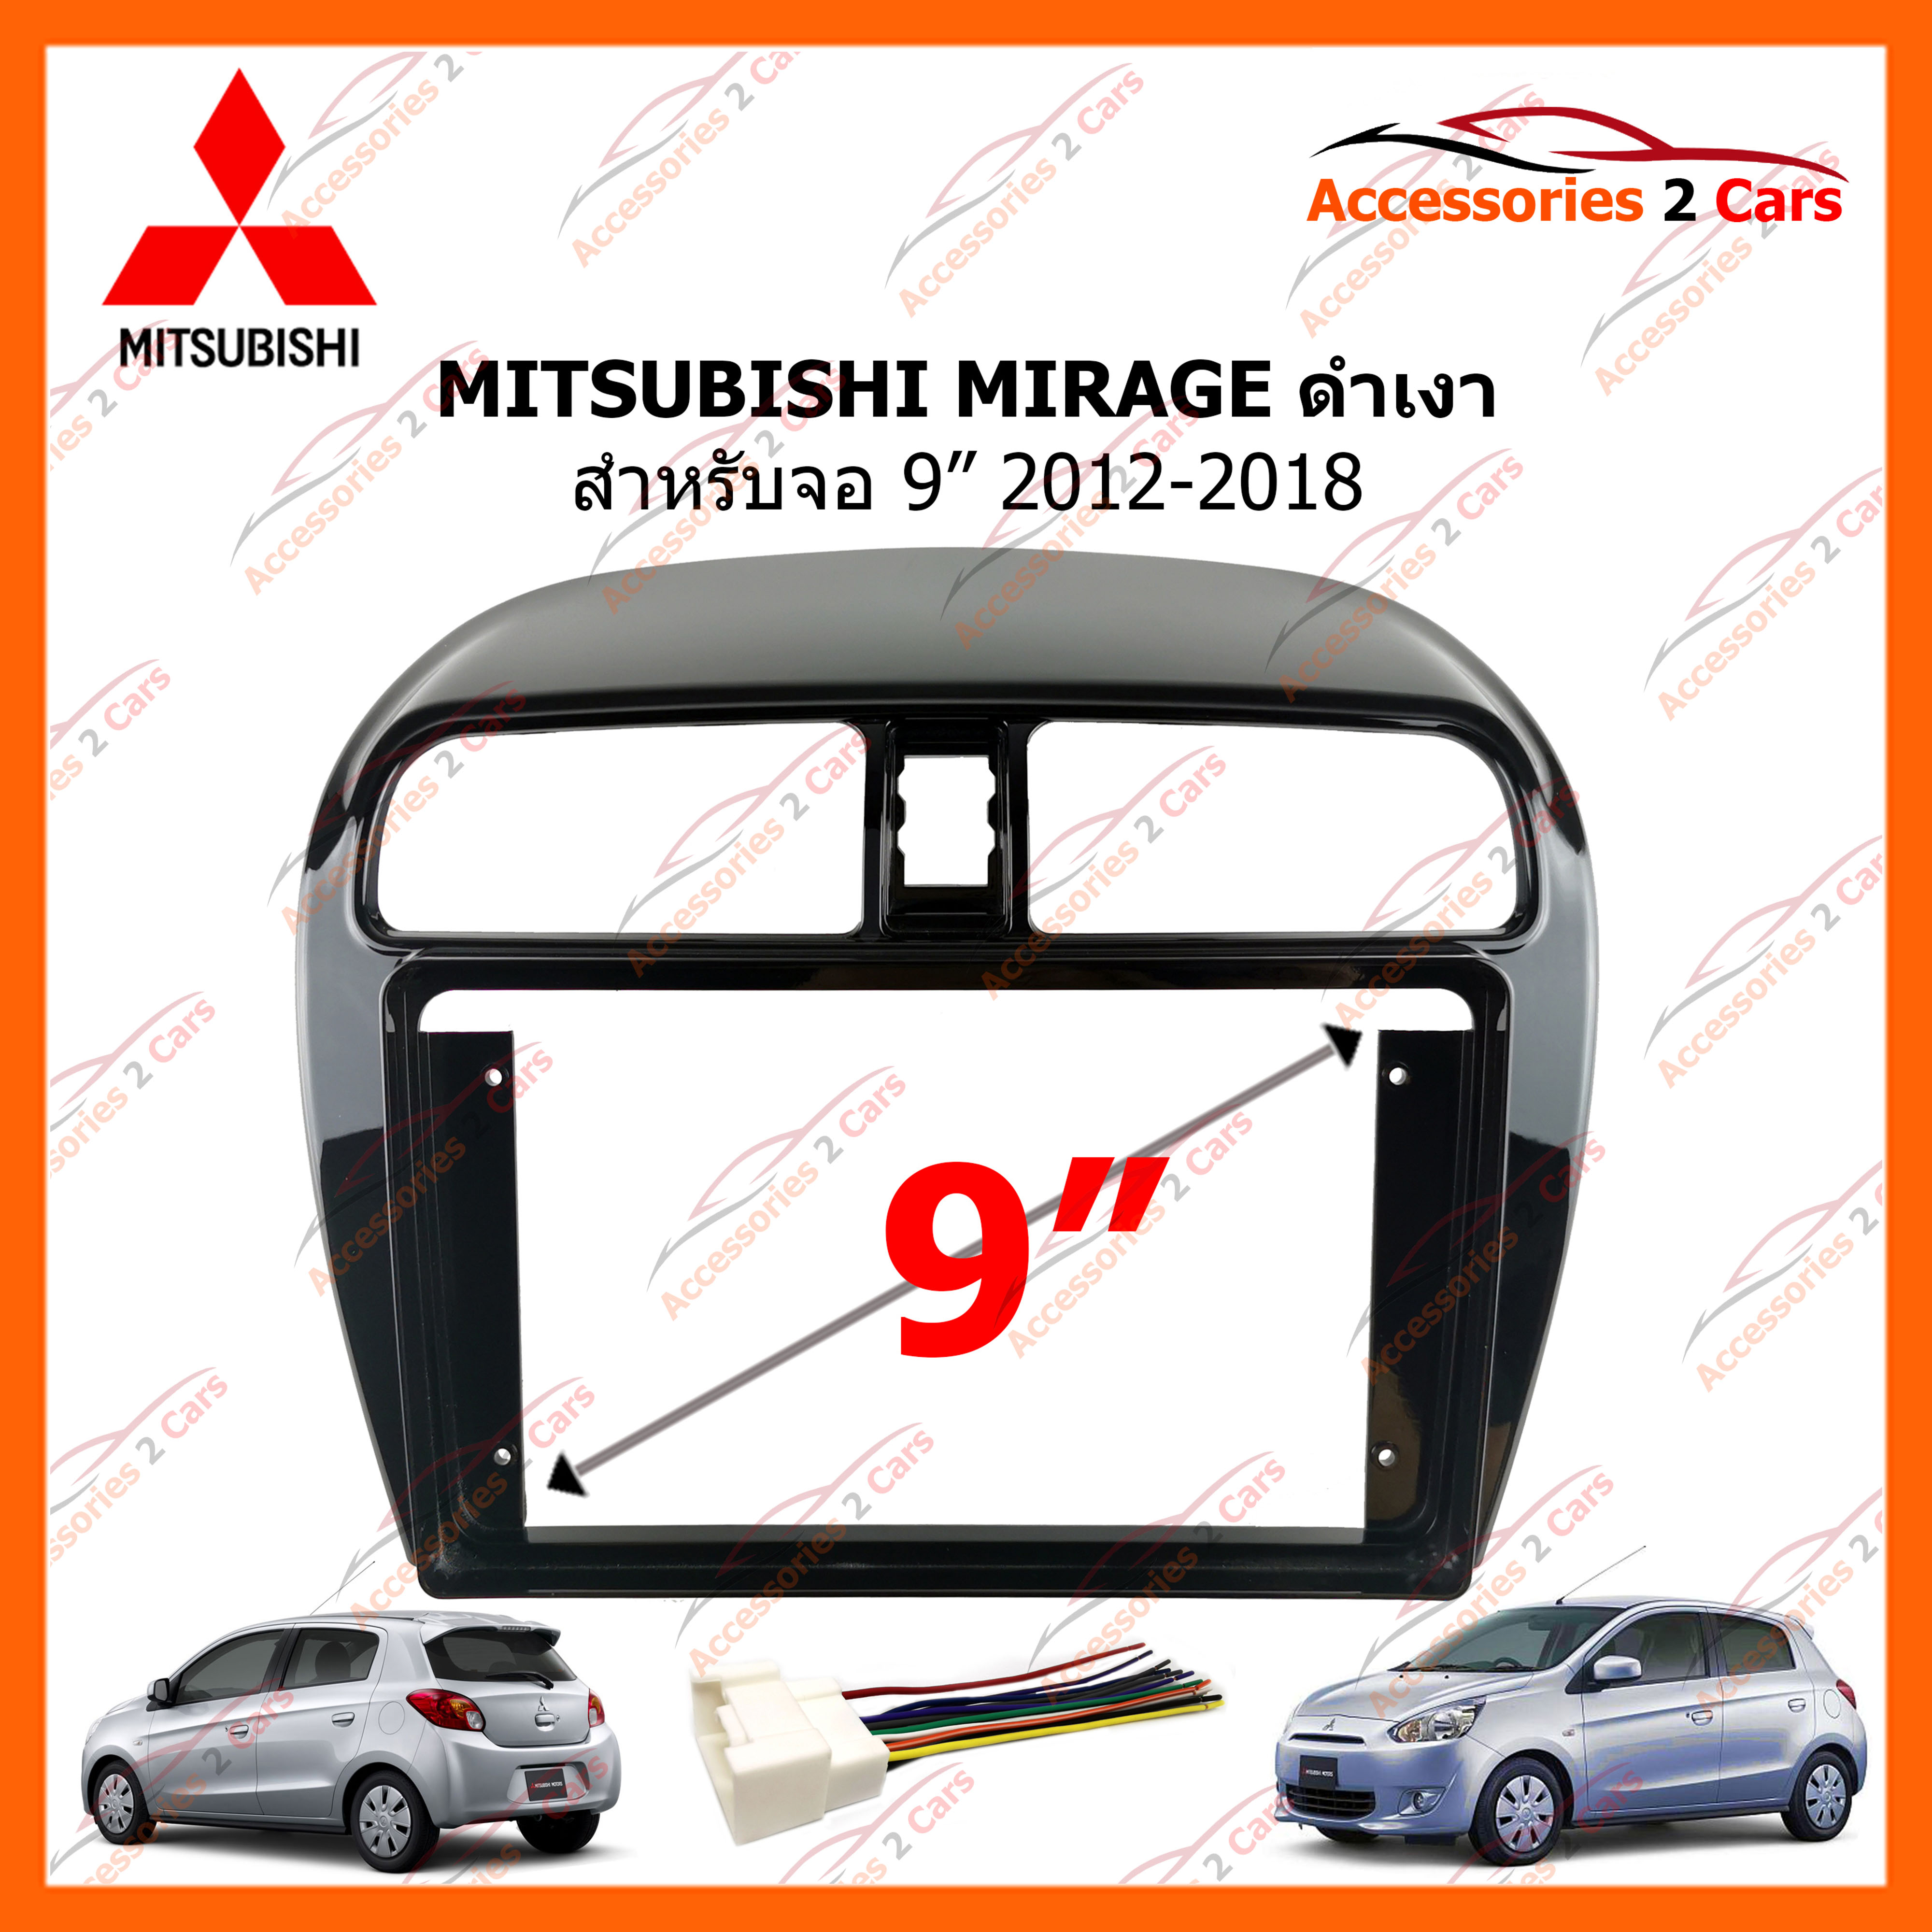 หน้ากากวิทยุรถยนต์ MITSUBISHI MIRAGE ดำเงา 2012-2018 สำหรับจอ 9 นิ้ว (MI-052N)